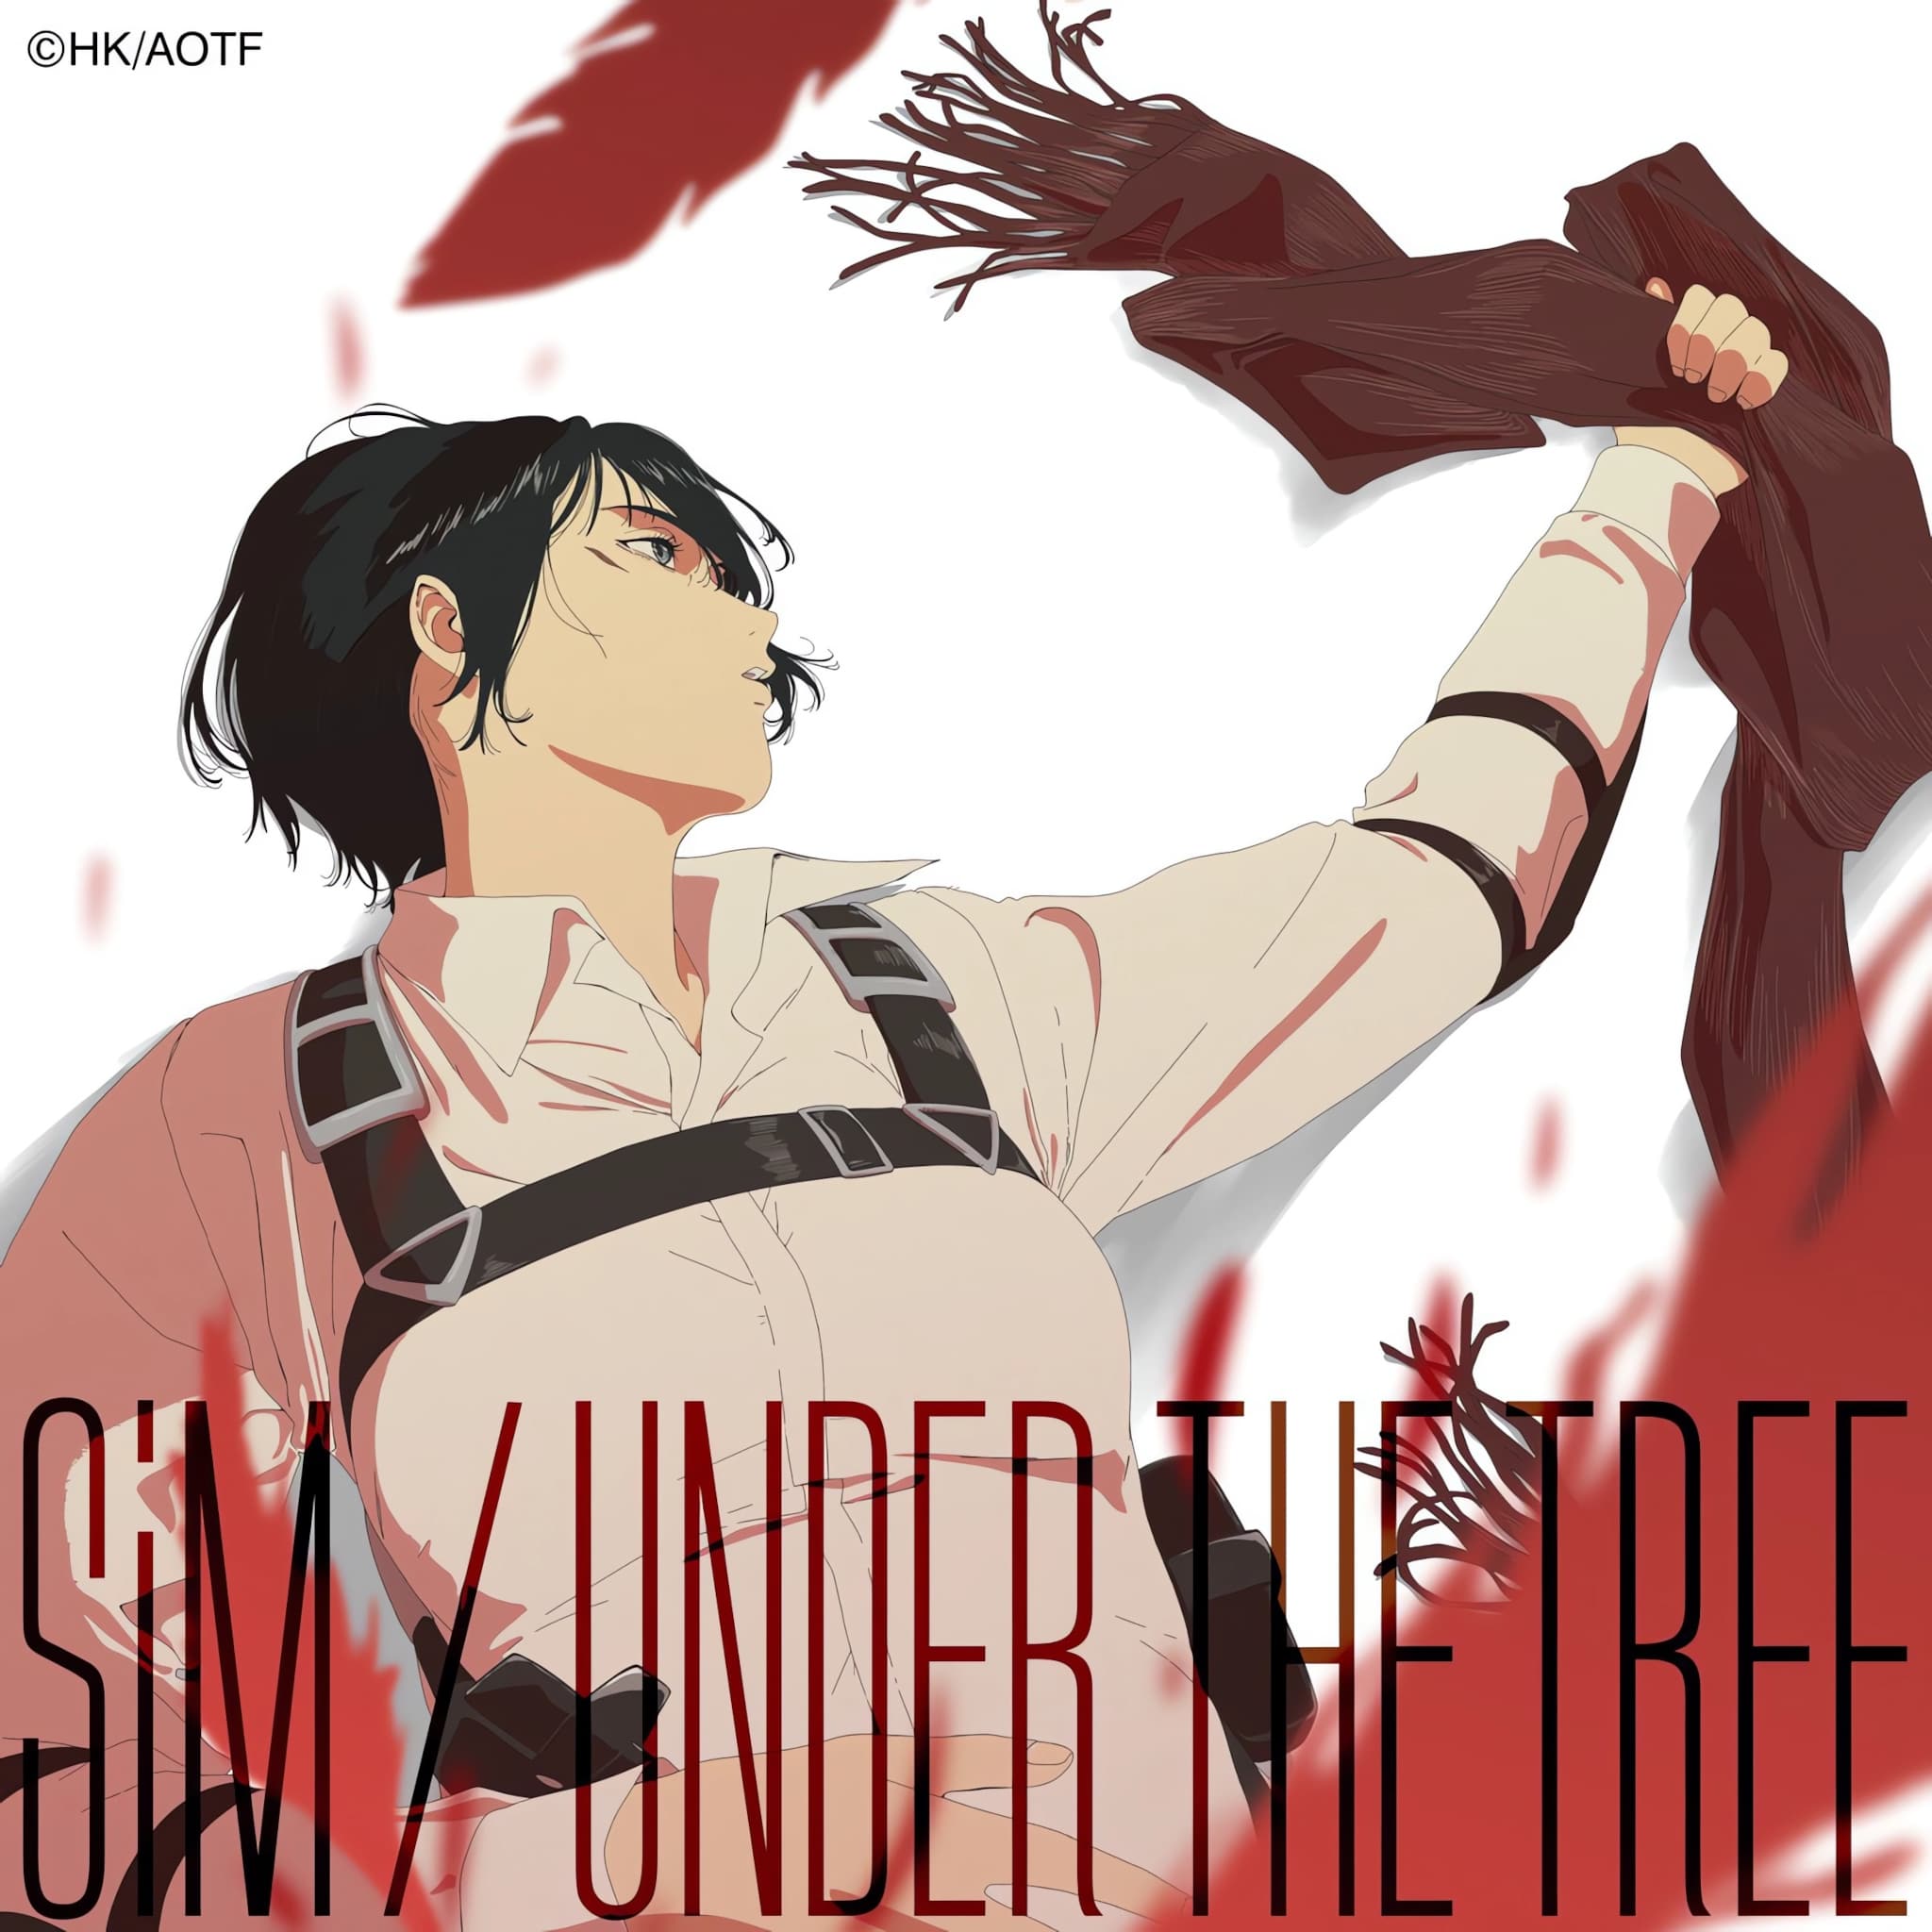 Couverture de la chanson thème "Under The Tree" interprétée par le groupe de metal SiM pour la saison finale de Shingeki no Kyojin